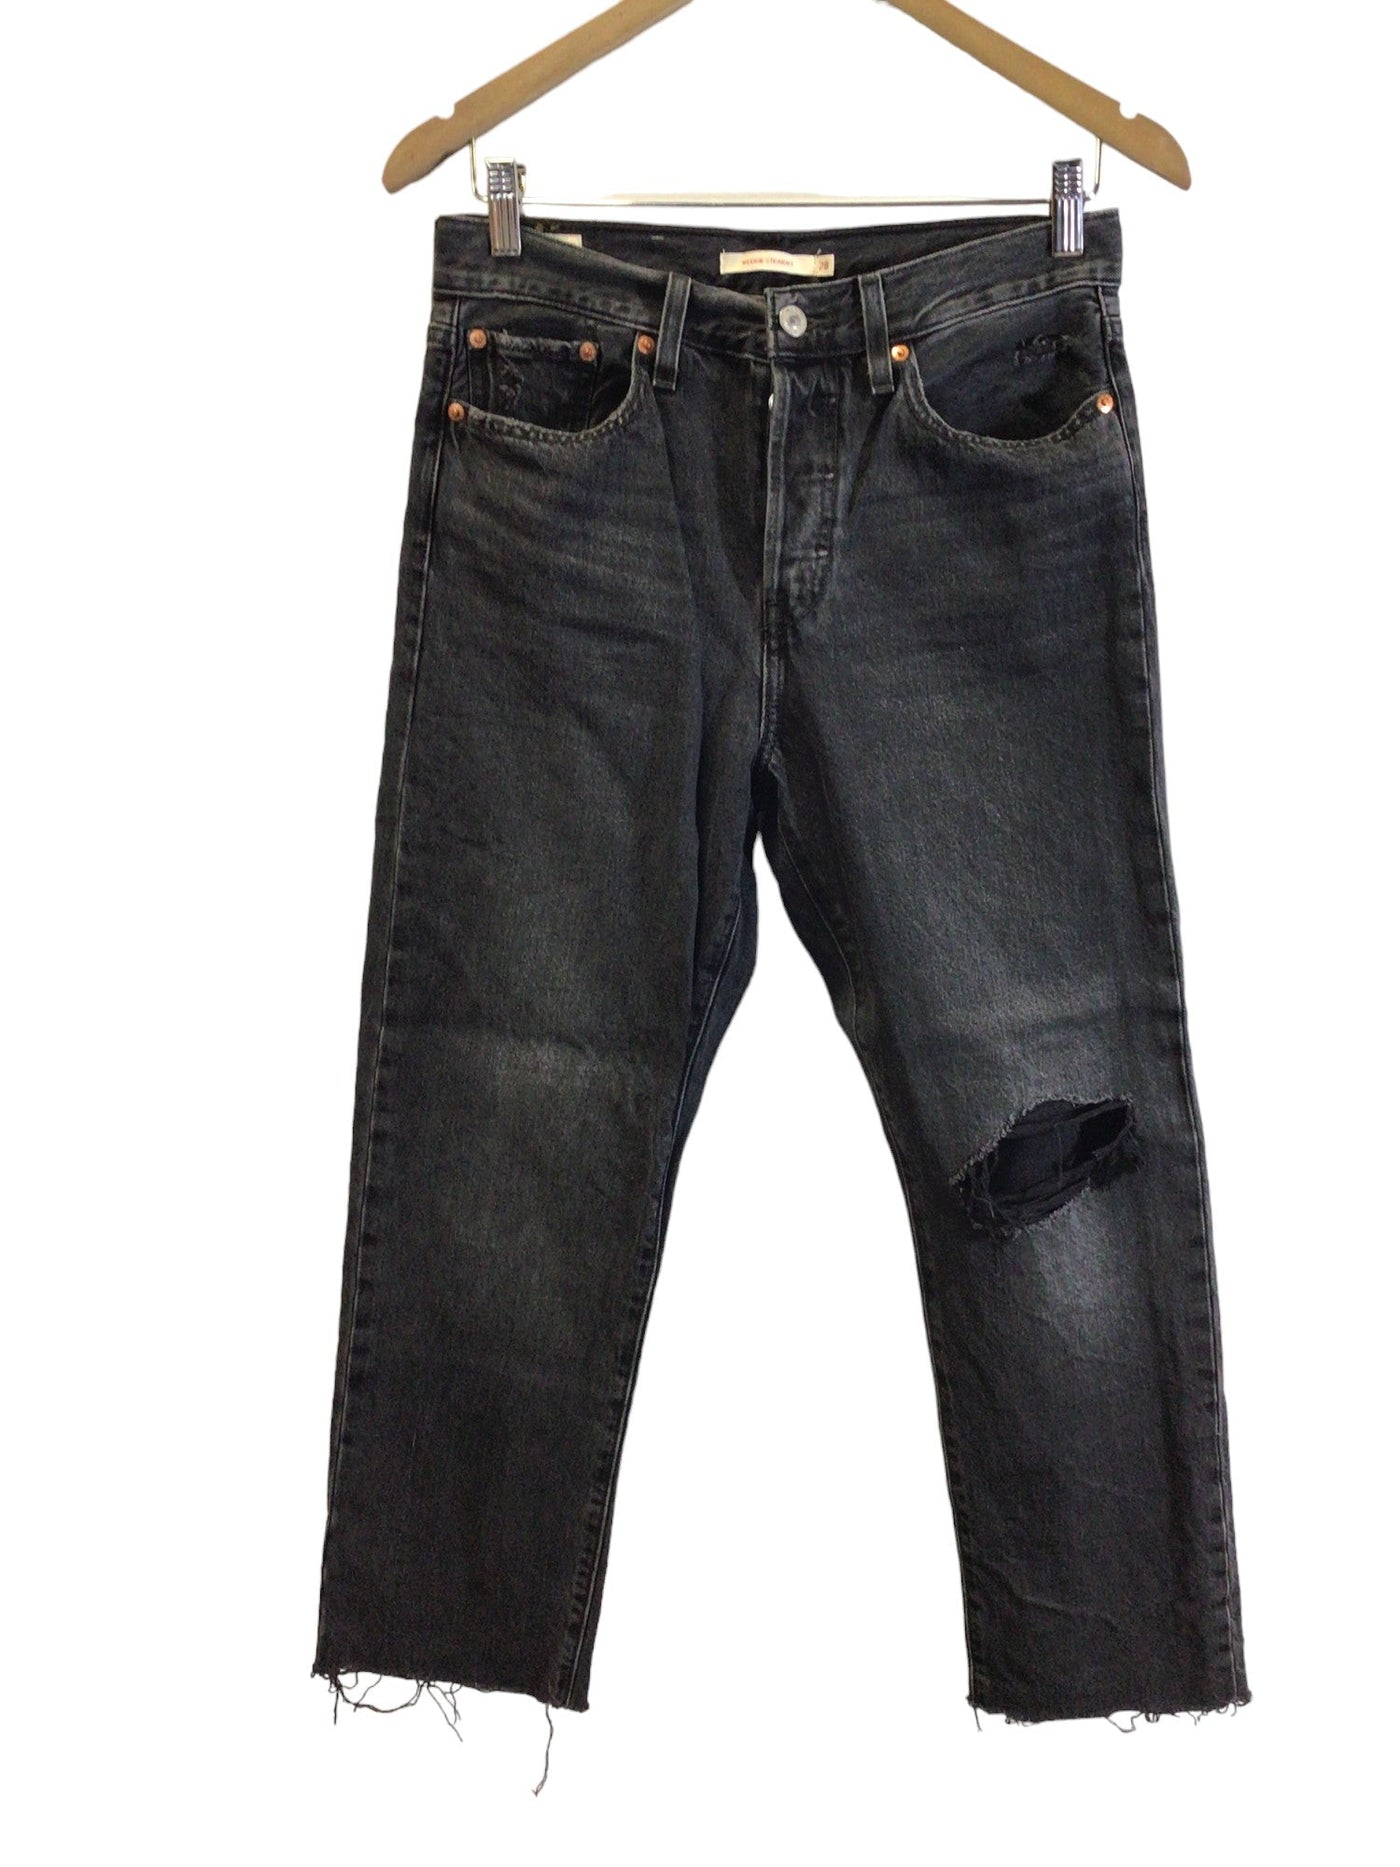 LEVI'S Women Straight-Legged Jeans Regular fit in Gray - Size 28x26 | 25.99 $ KOOP